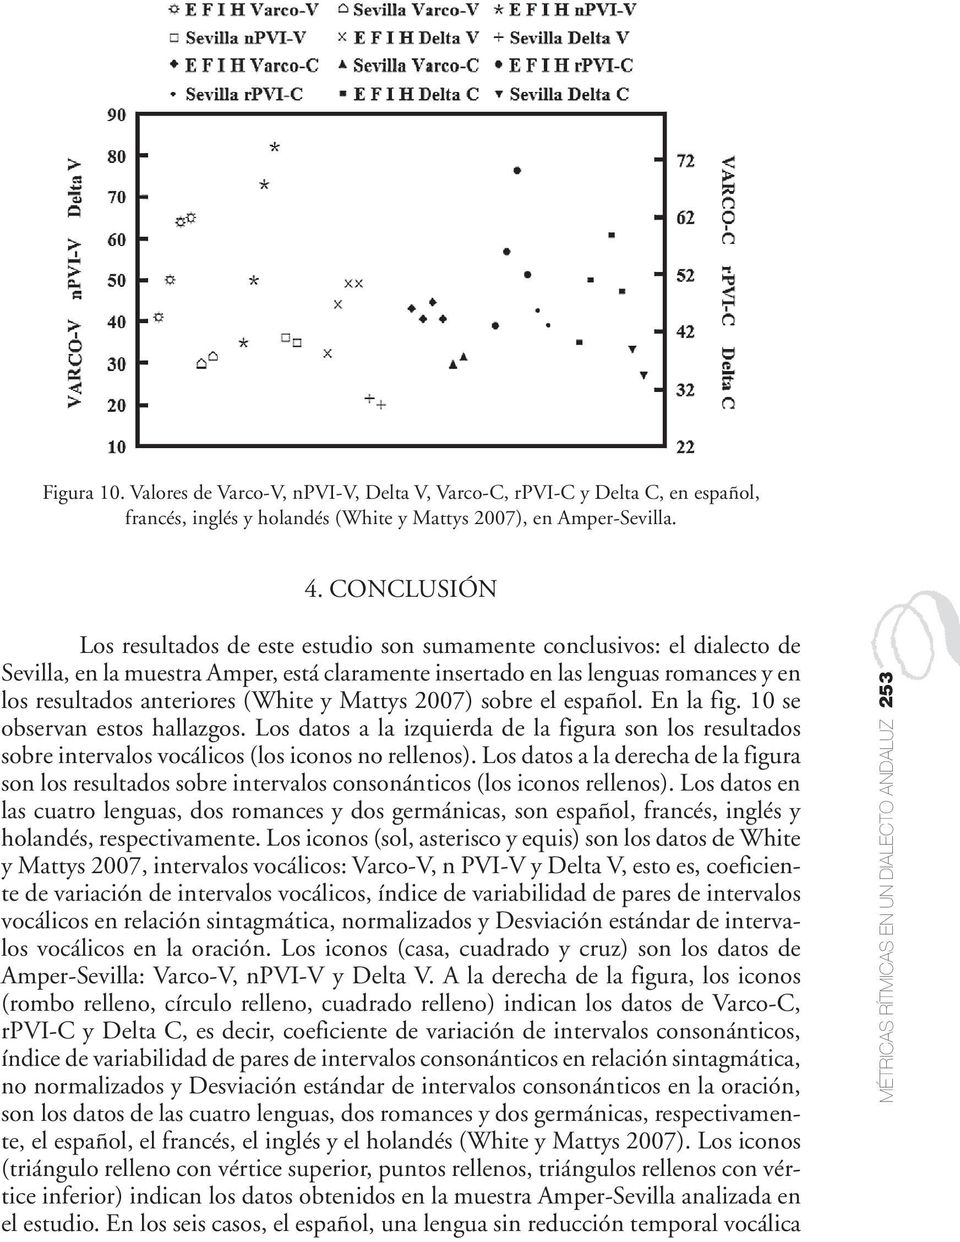 (White y Mattys 2007) sobre el español. En la fig. 10 se observan estos hallazgos. Los datos a la izquierda de la figura son los resultados sobre intervalos vocálicos (los iconos no rellenos).